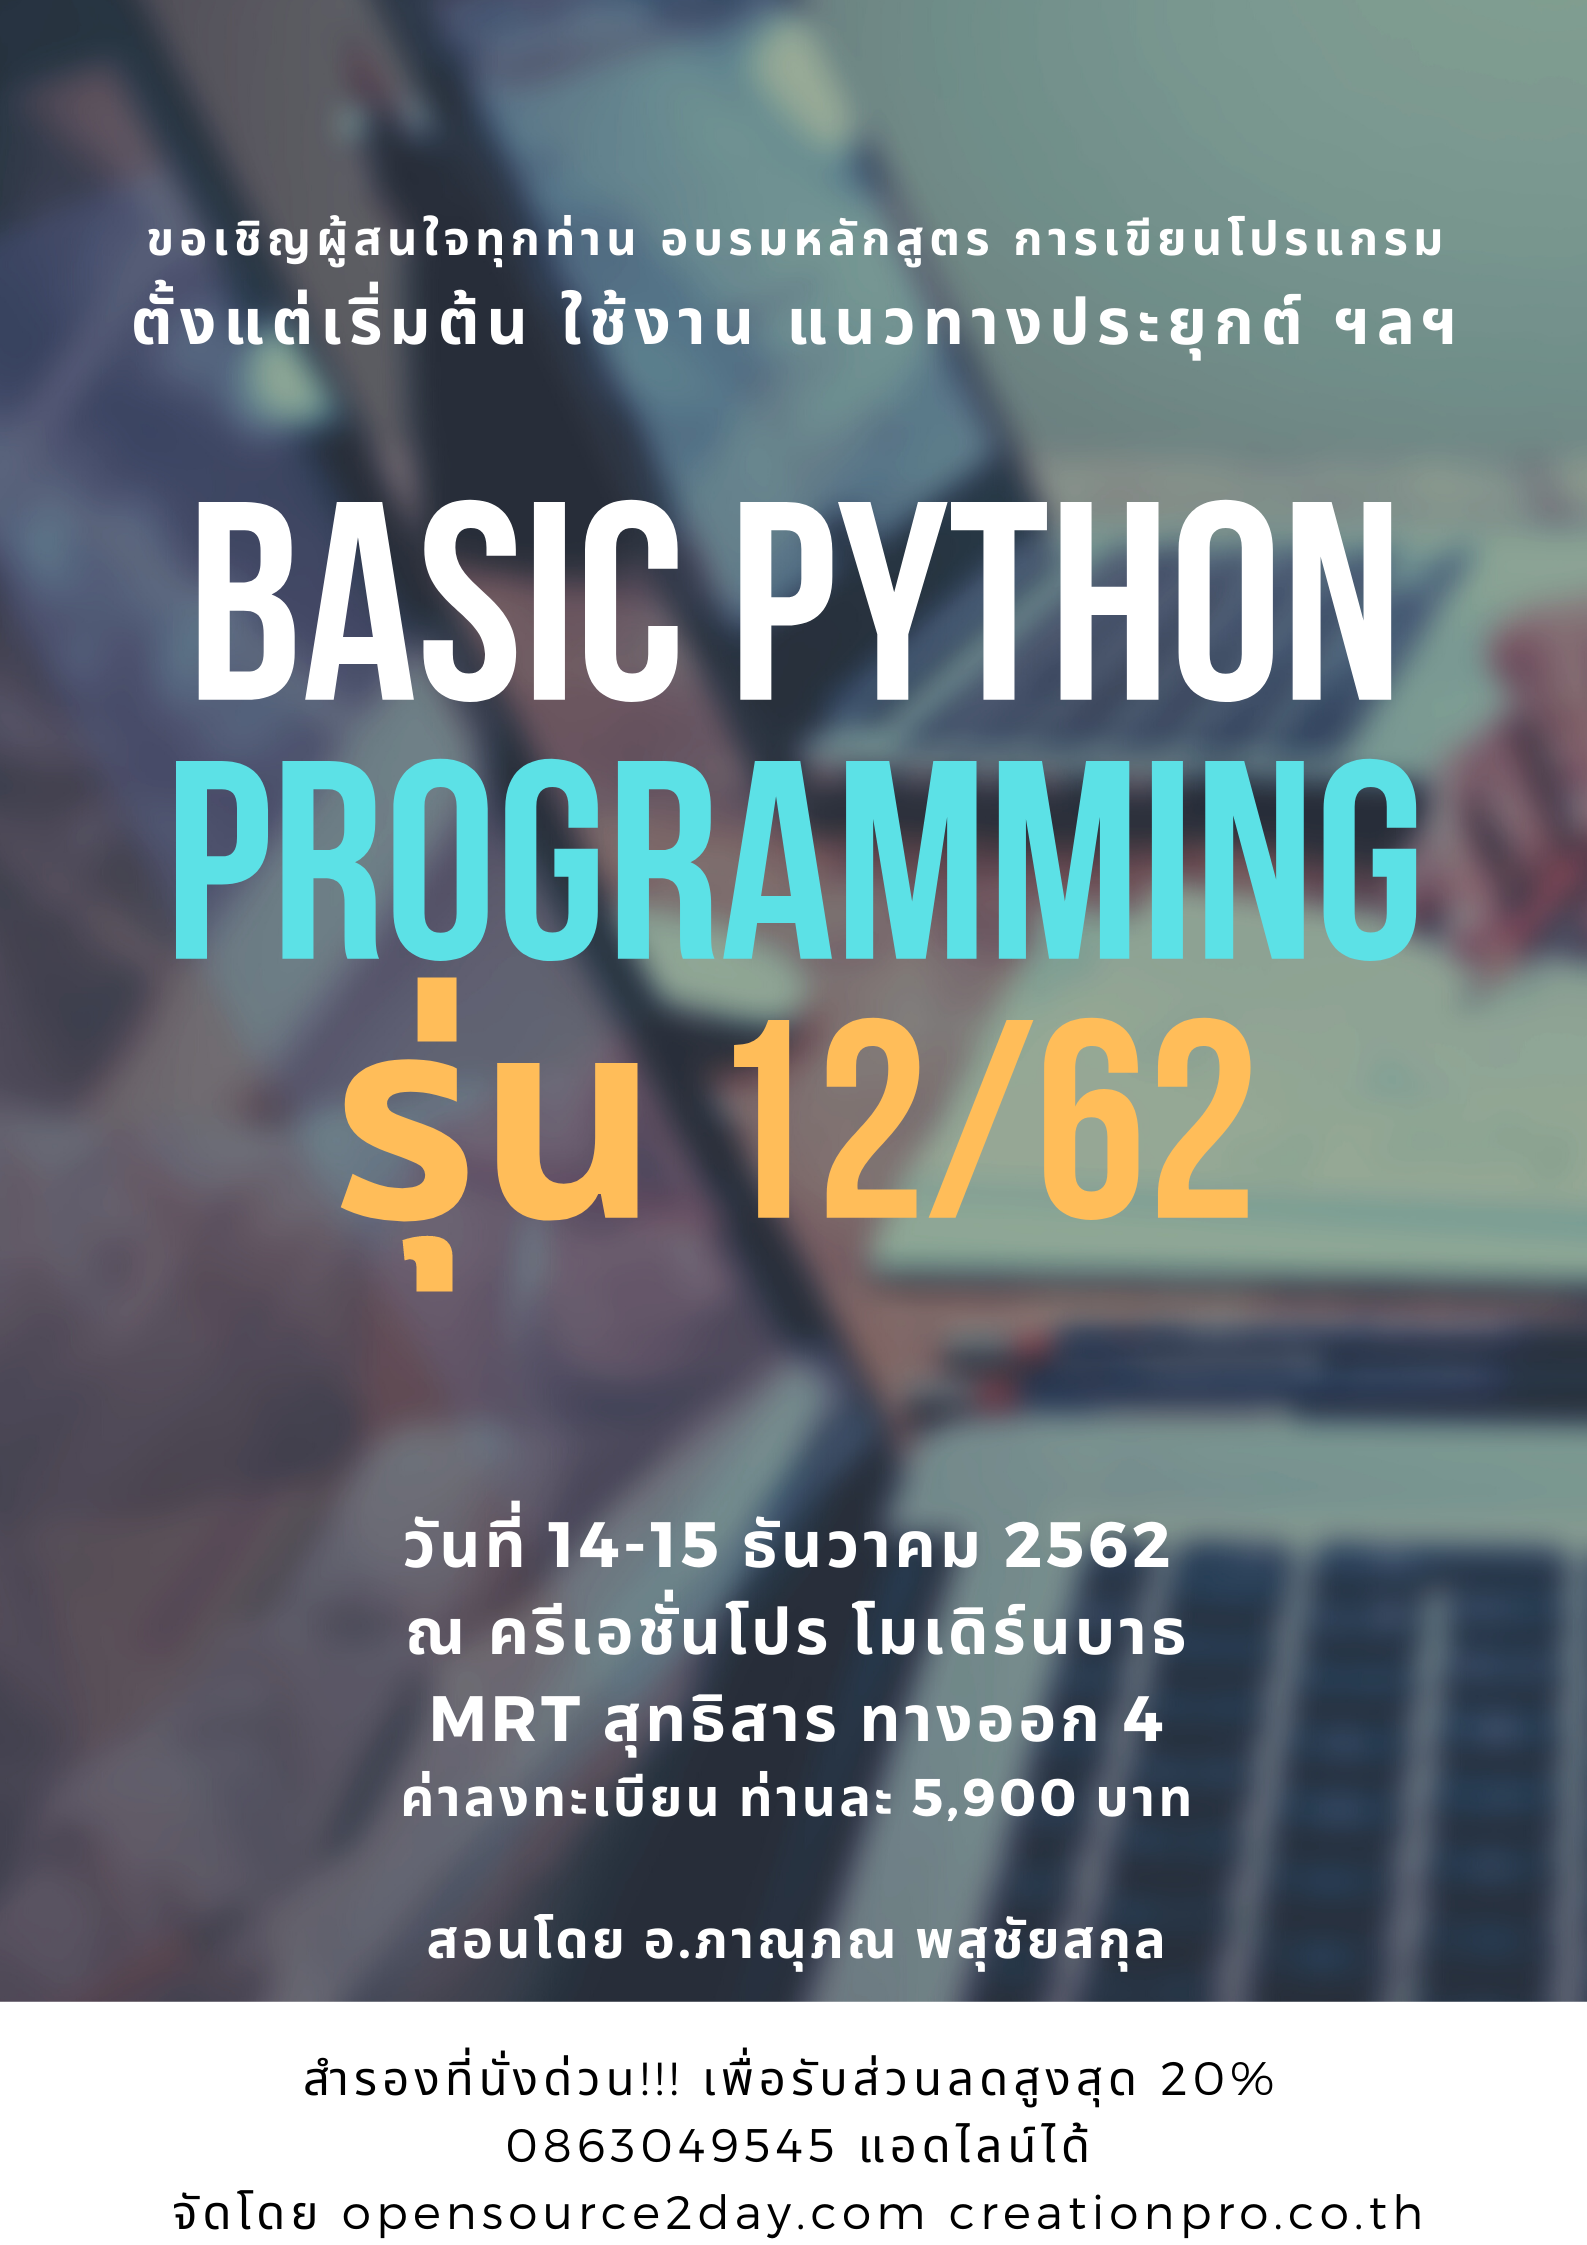 ขอเชิญอบรม "Basic Python Programing" 14-15 ธันวาคม 2562